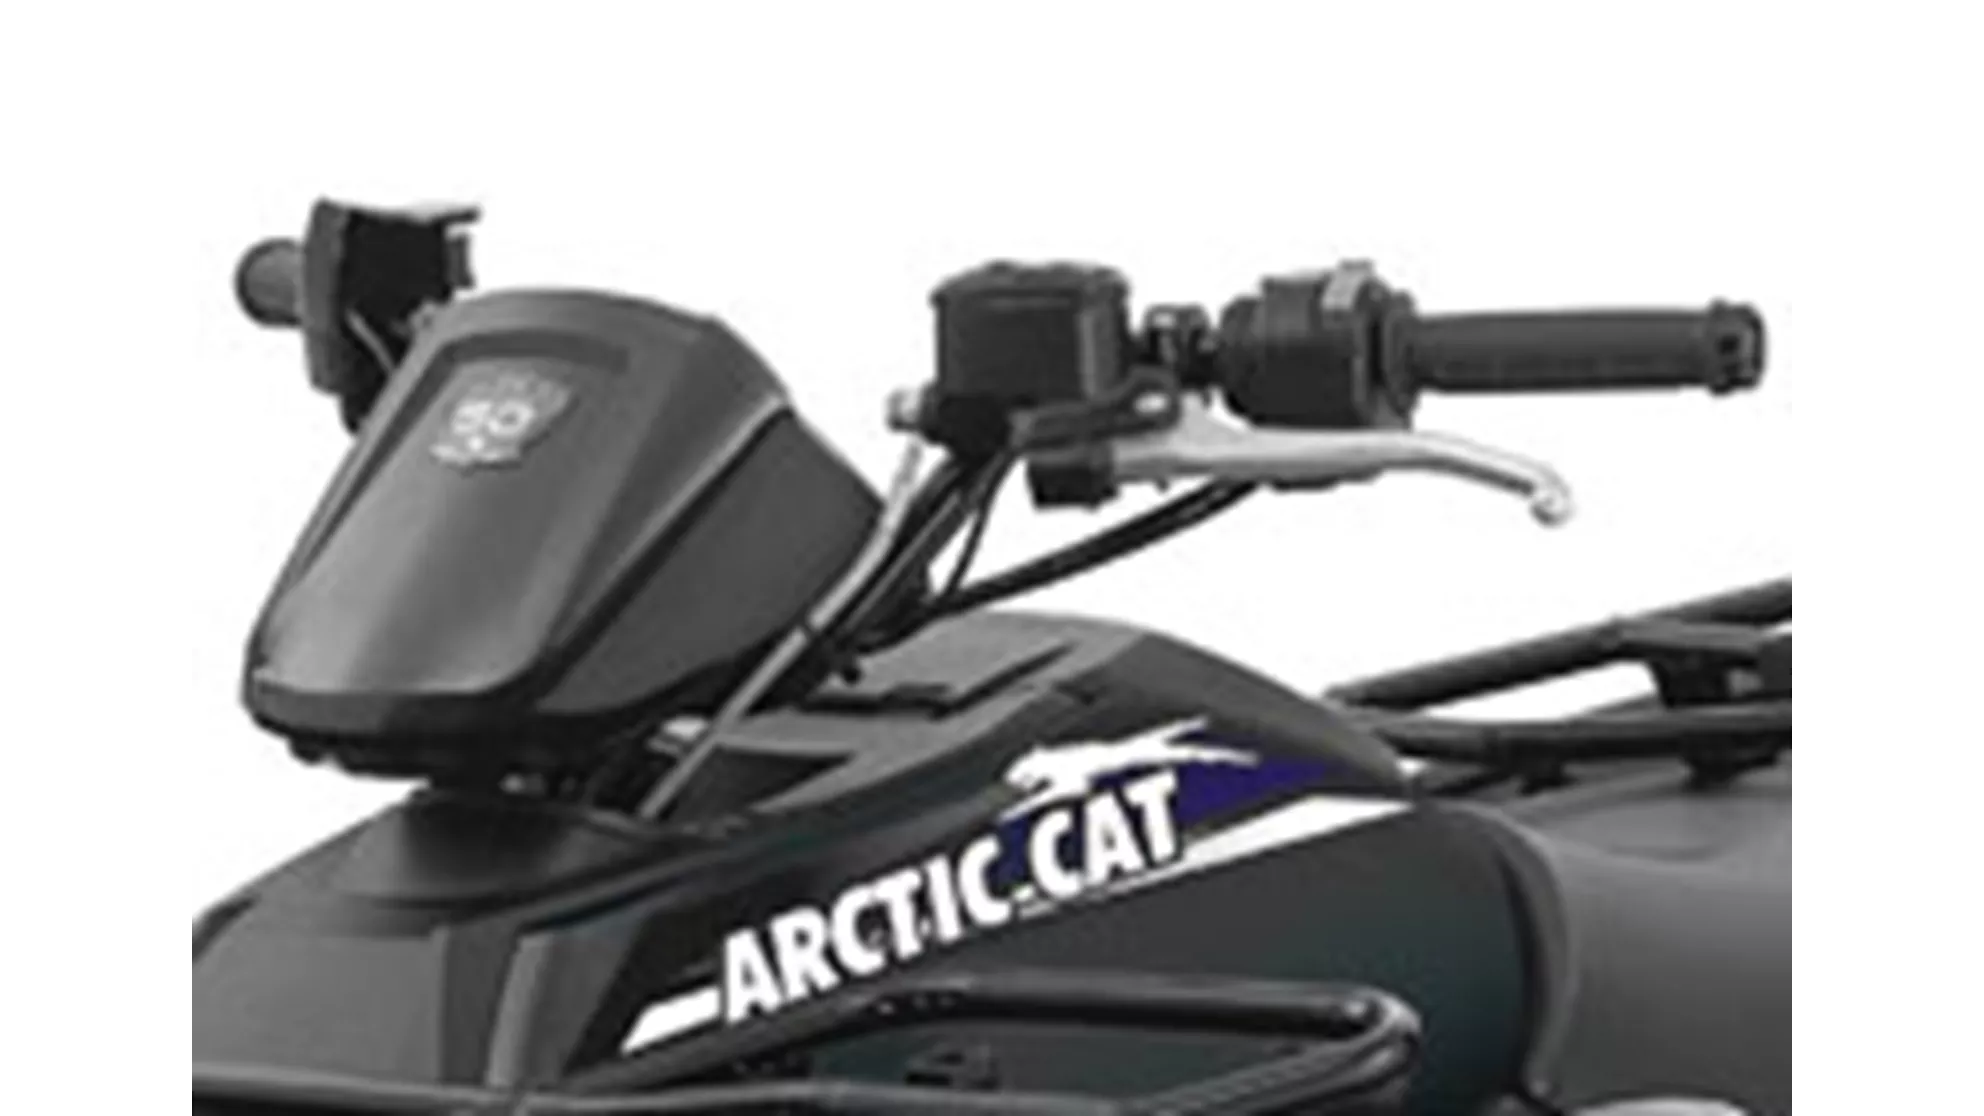 Arctic Cat 550i 4x4 - Image 1